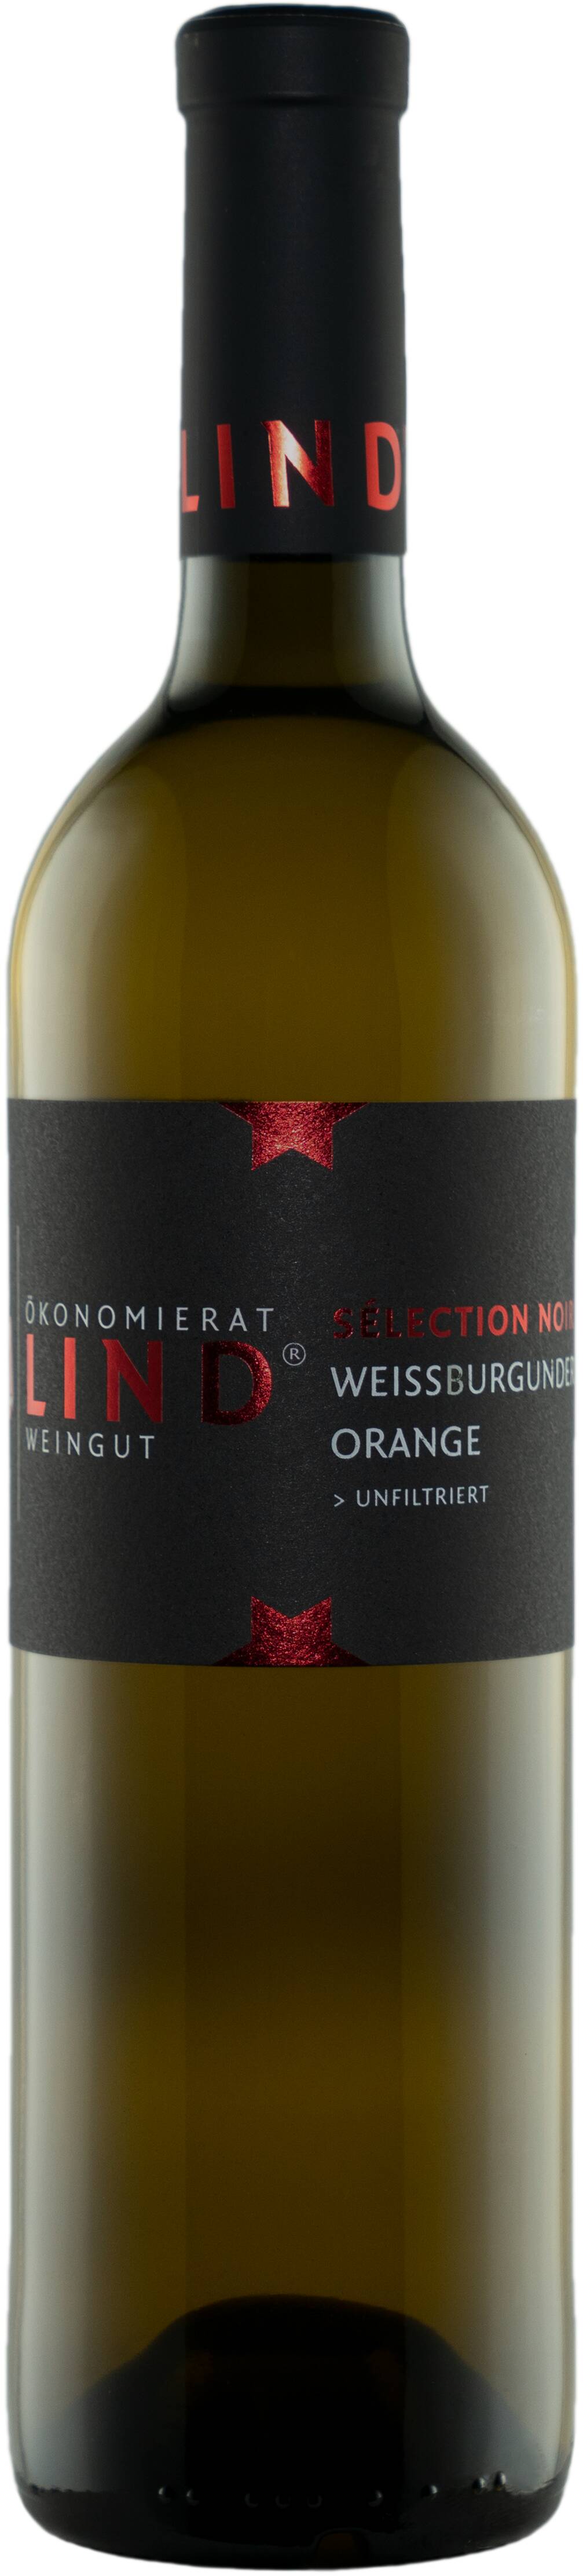 Weissburgunder Orange >unfiltriert